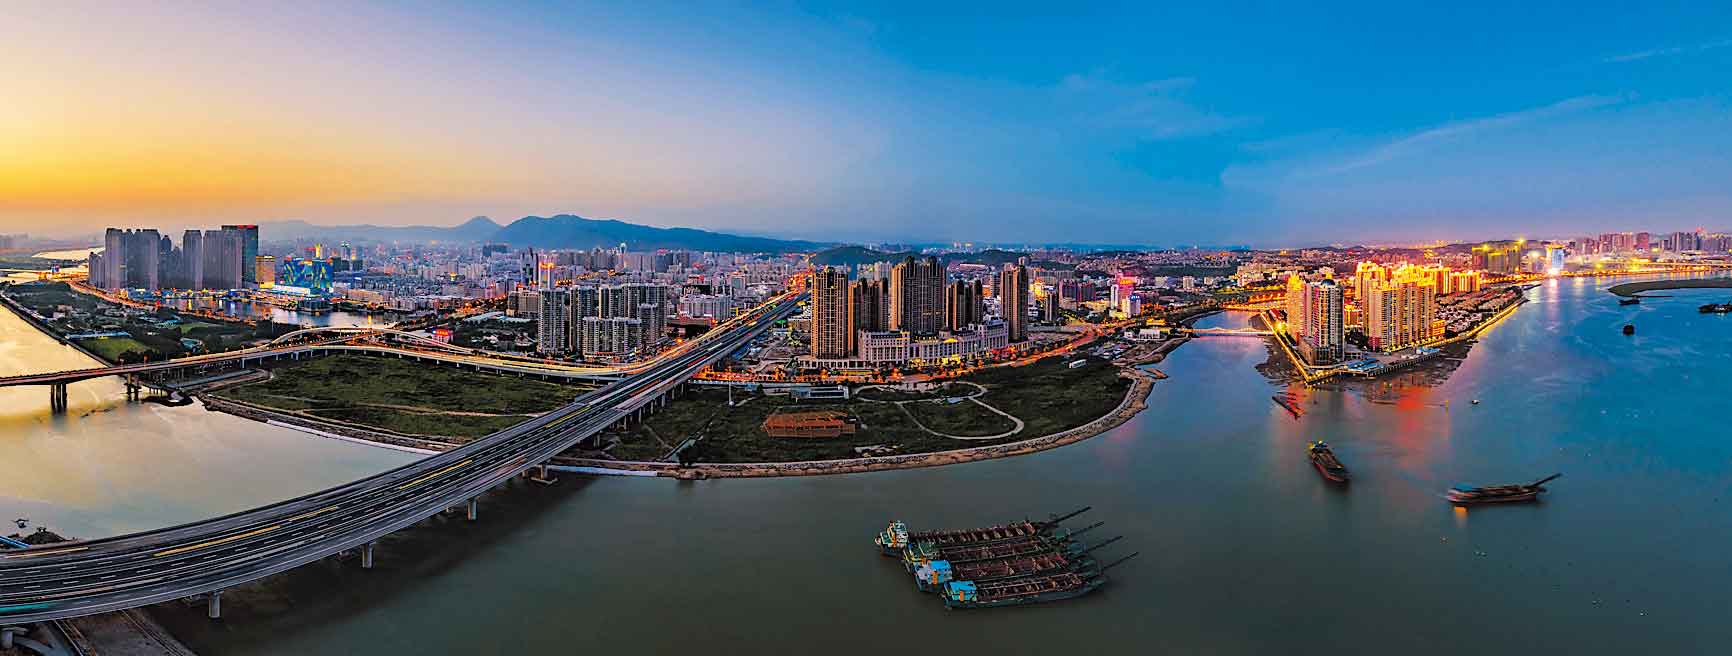 福州、泉州上榜《中国18座新兴投资热点城市》名单